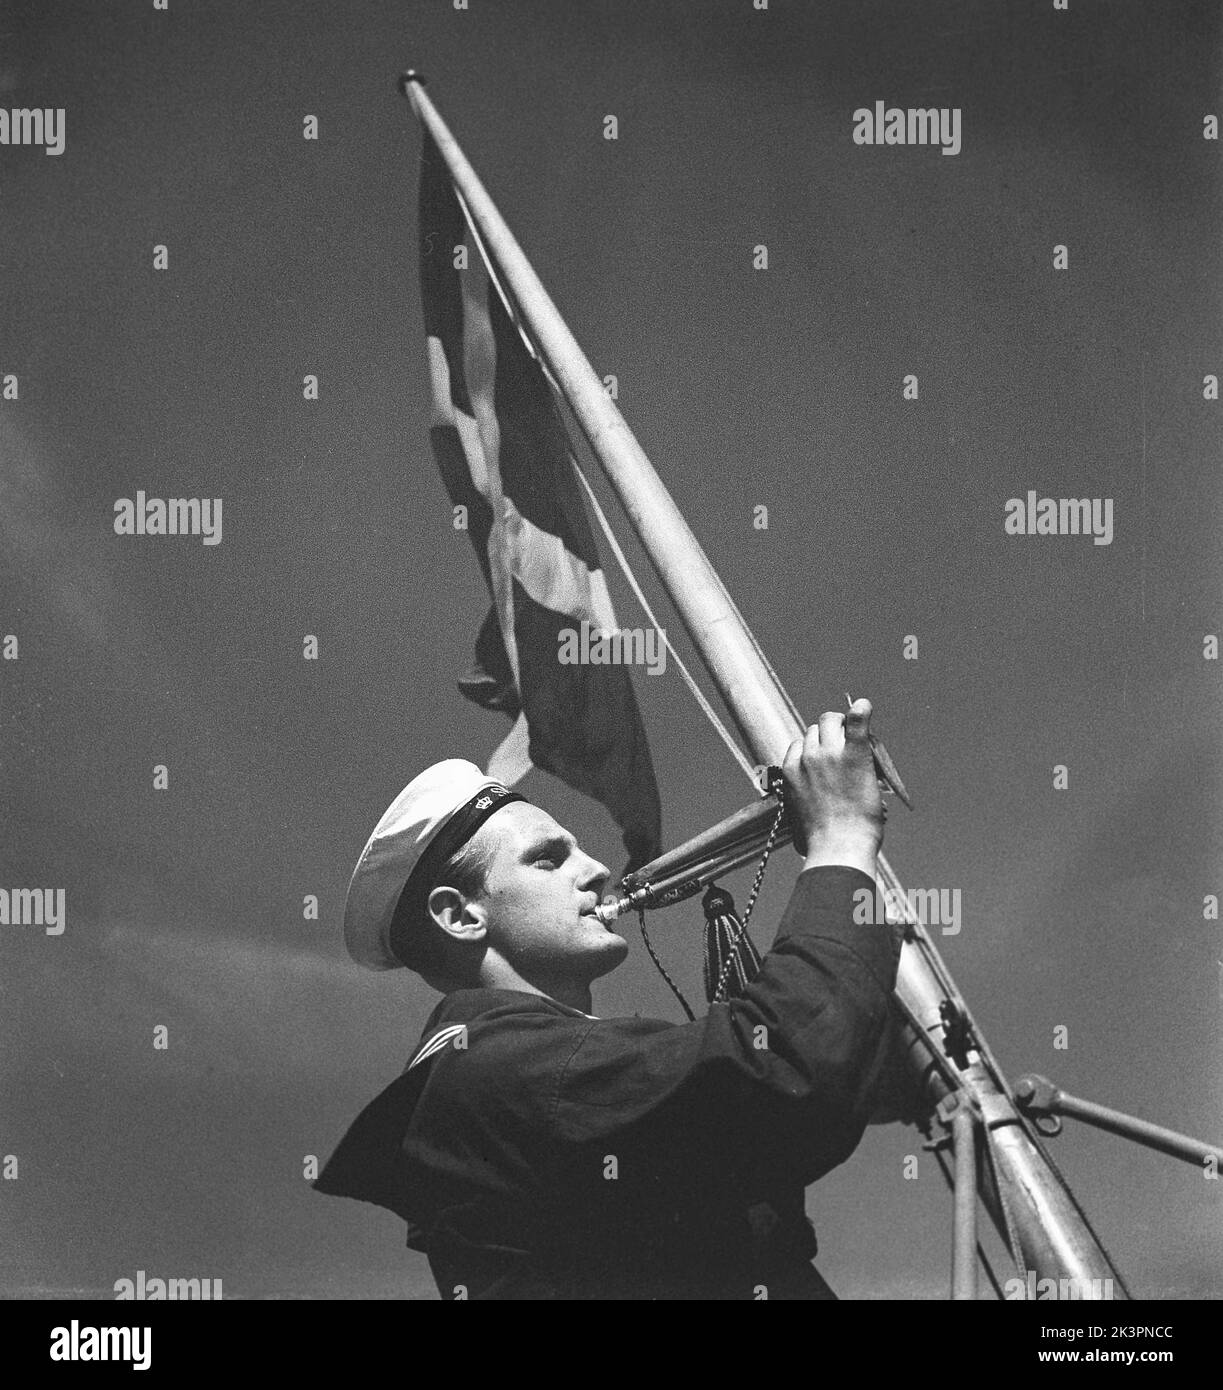 Während des Zweiten Weltkriegs Das Kriegsschiff Sverige während der Marineübungen auf See. Detail eines Matrosen, der in seinem Messinghorn signalisierte. Schweden juni 1940. Kristoffersson Ref. 141 Stockfoto